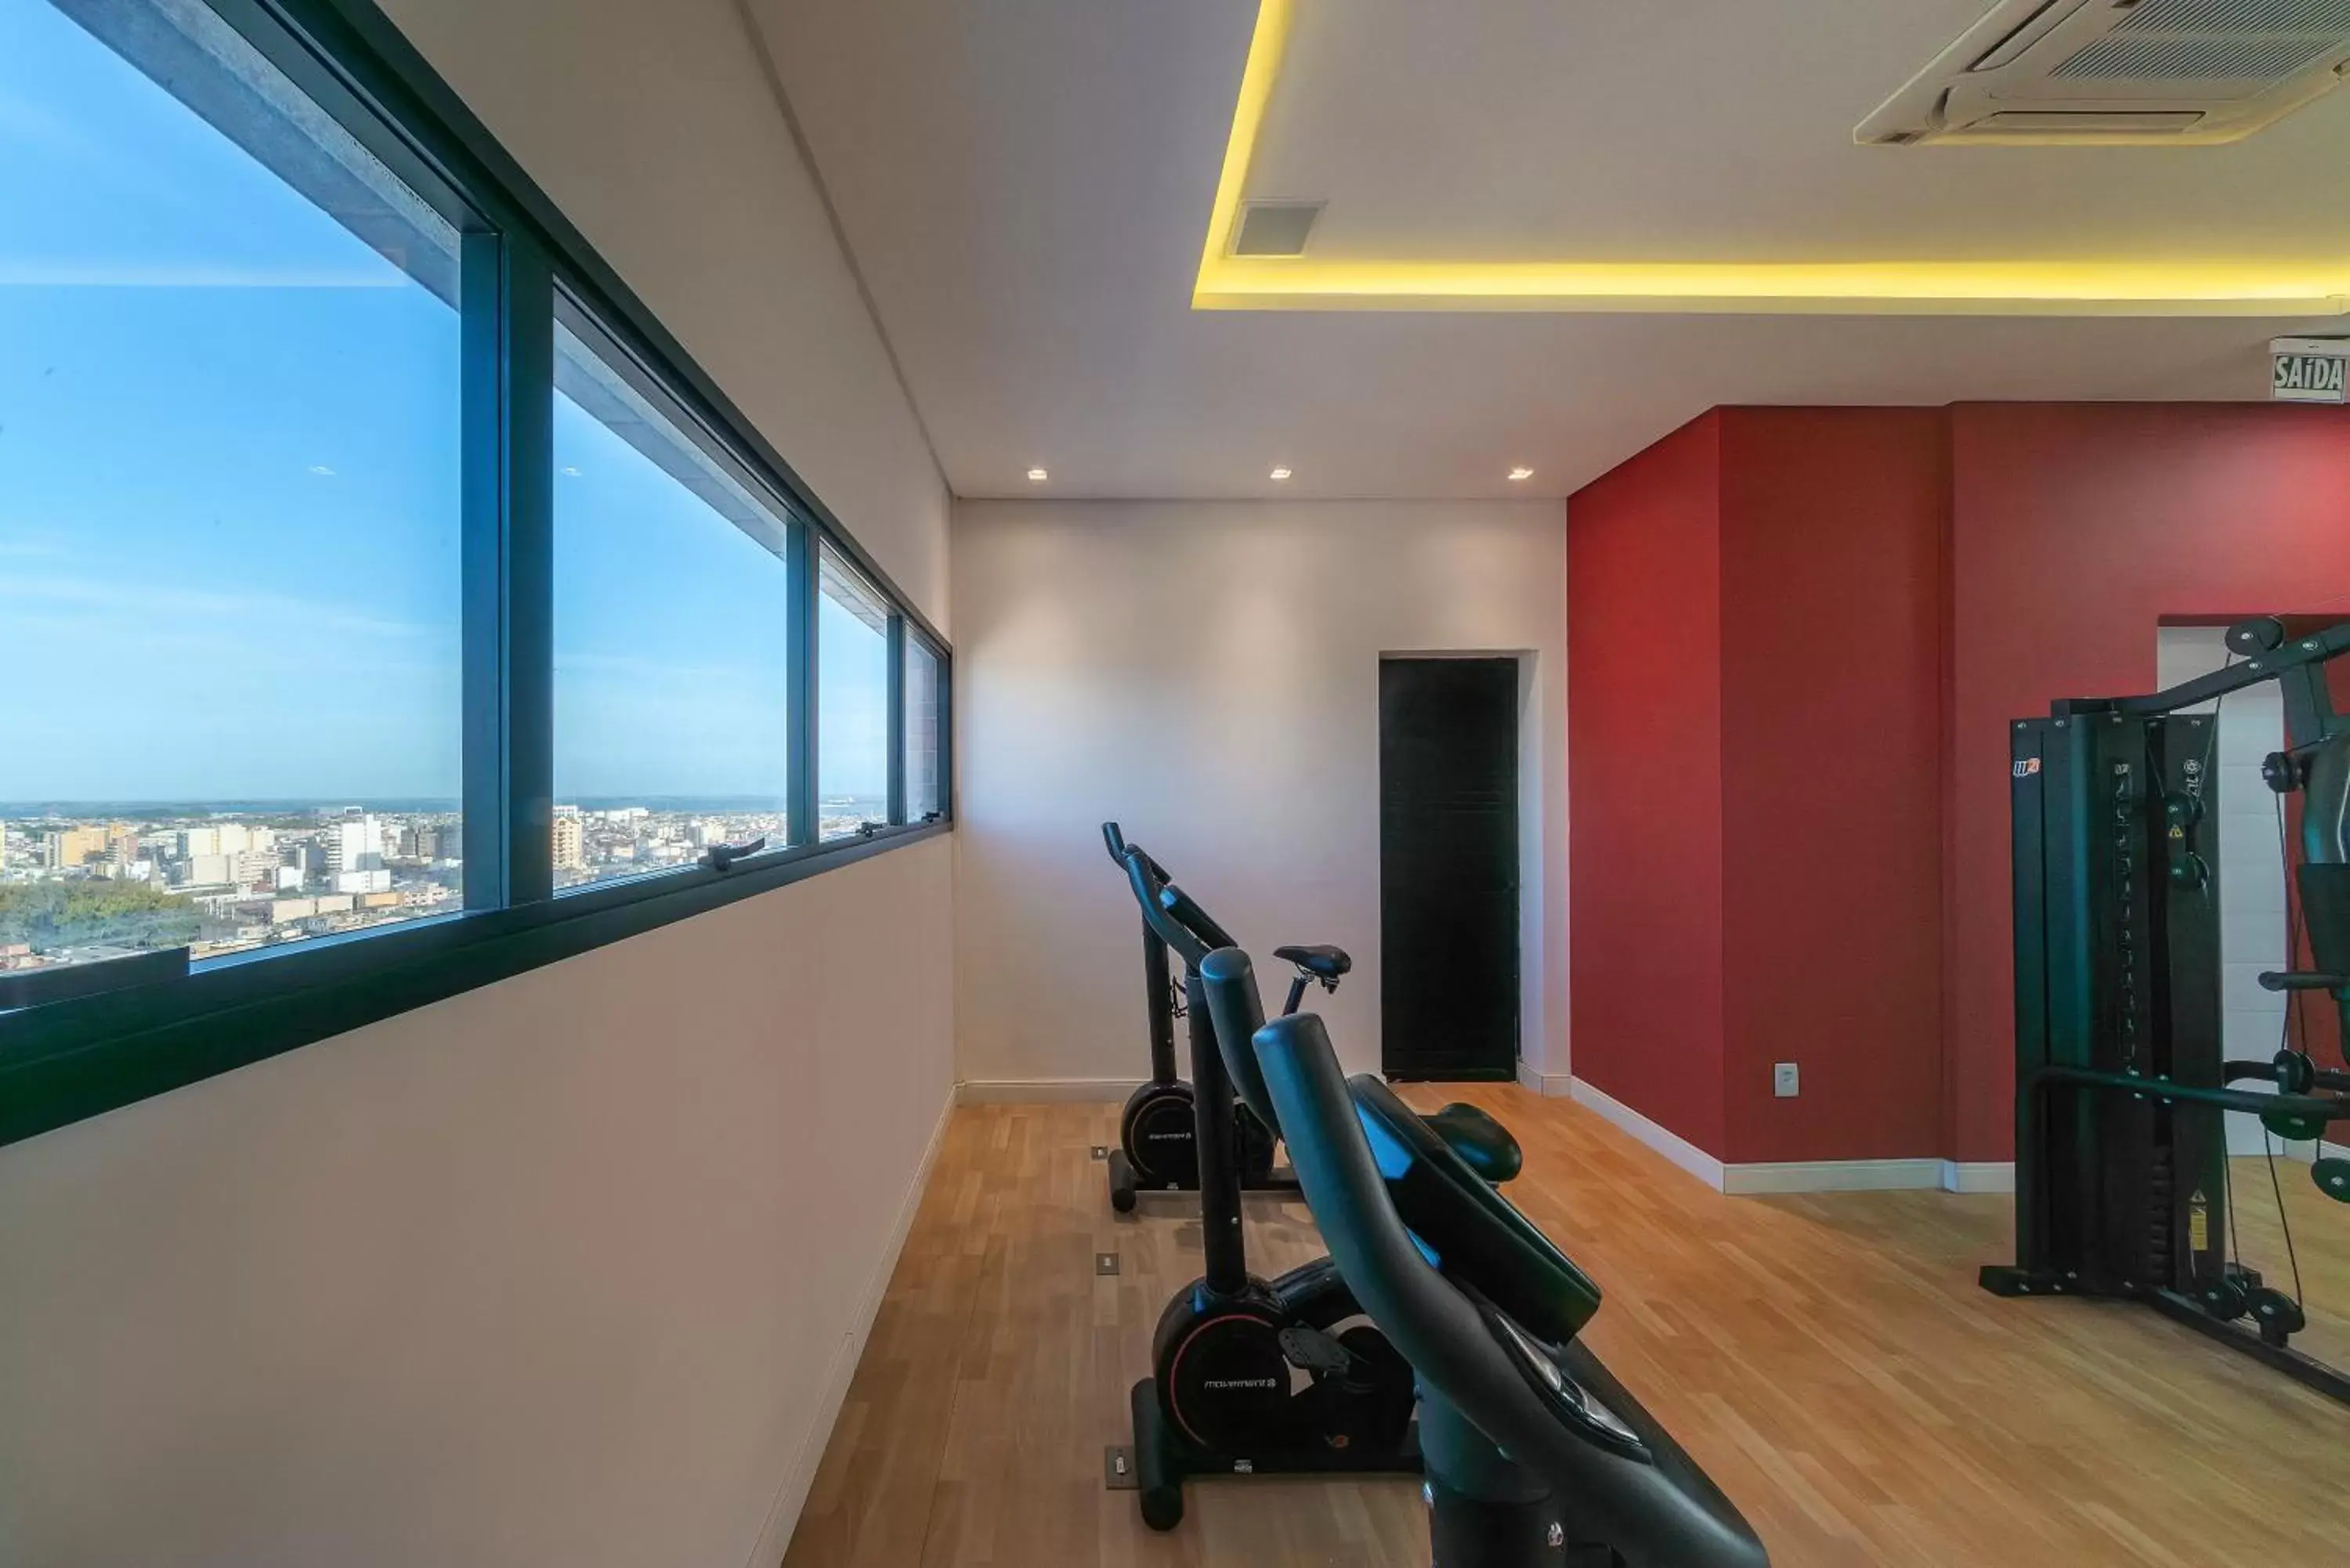 Fitness centre/facilities in Hotel Laghetto Rio Grande